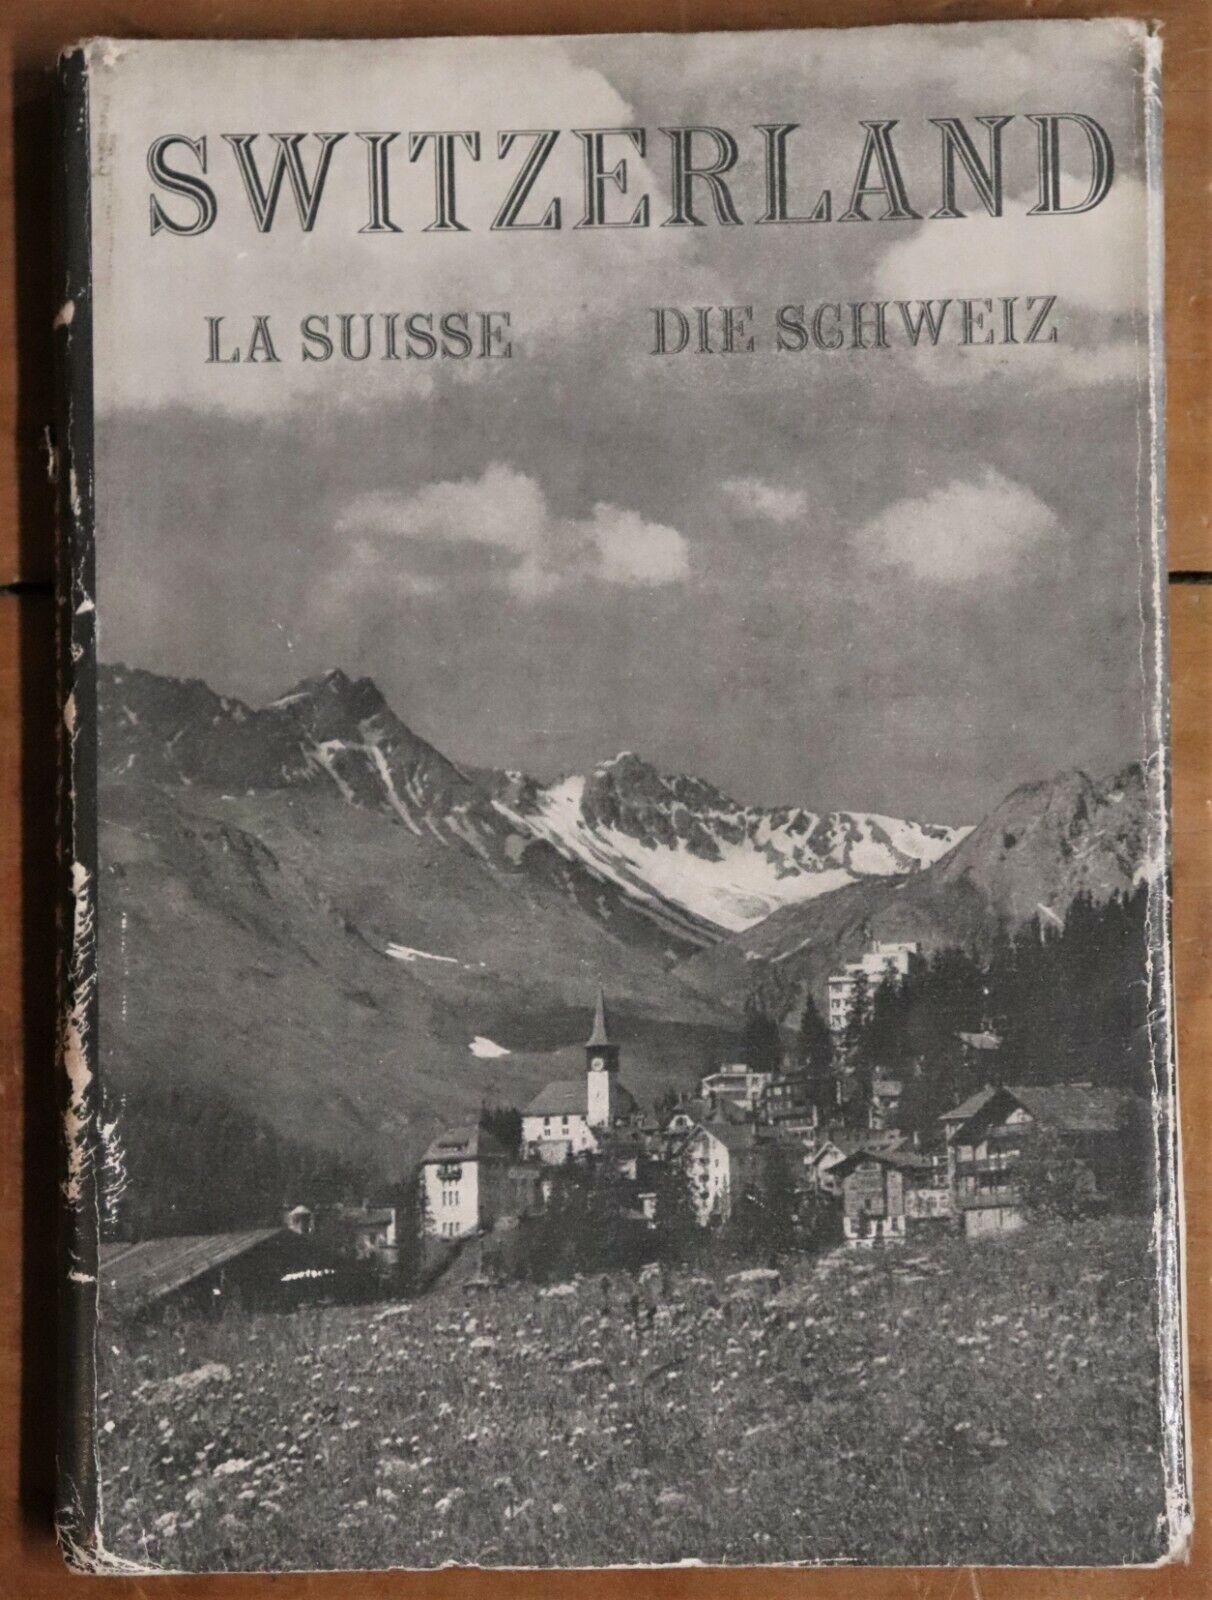 Switzerland La Suisse Die Schweiz - c1950 - Rare Antique Book - Aldington